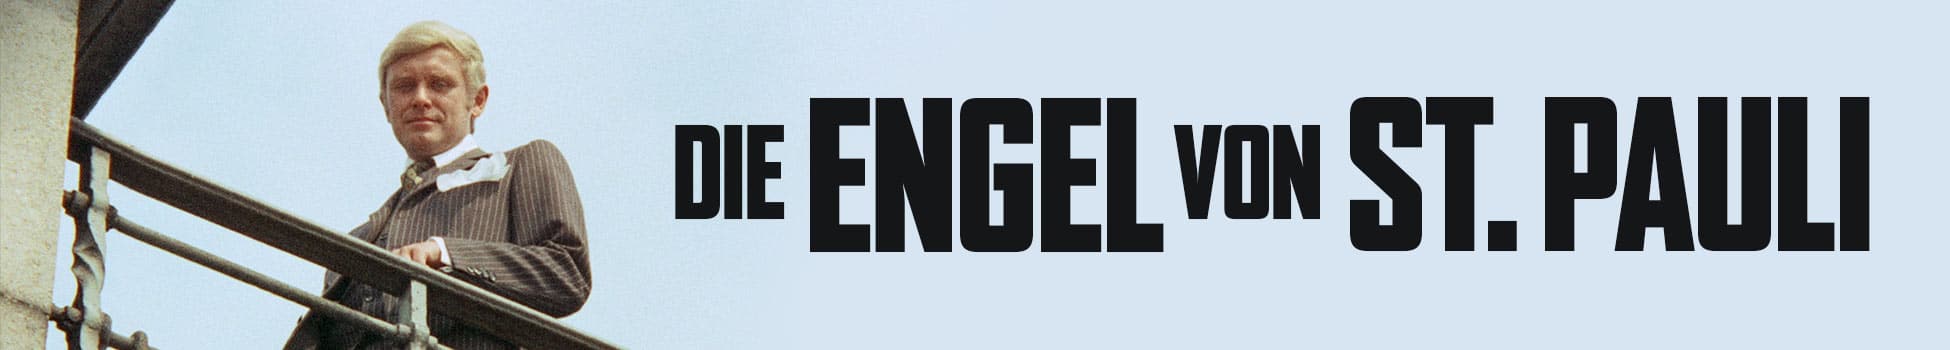 Die Engel von St. Pauli - Artwork - Key Visual - Header